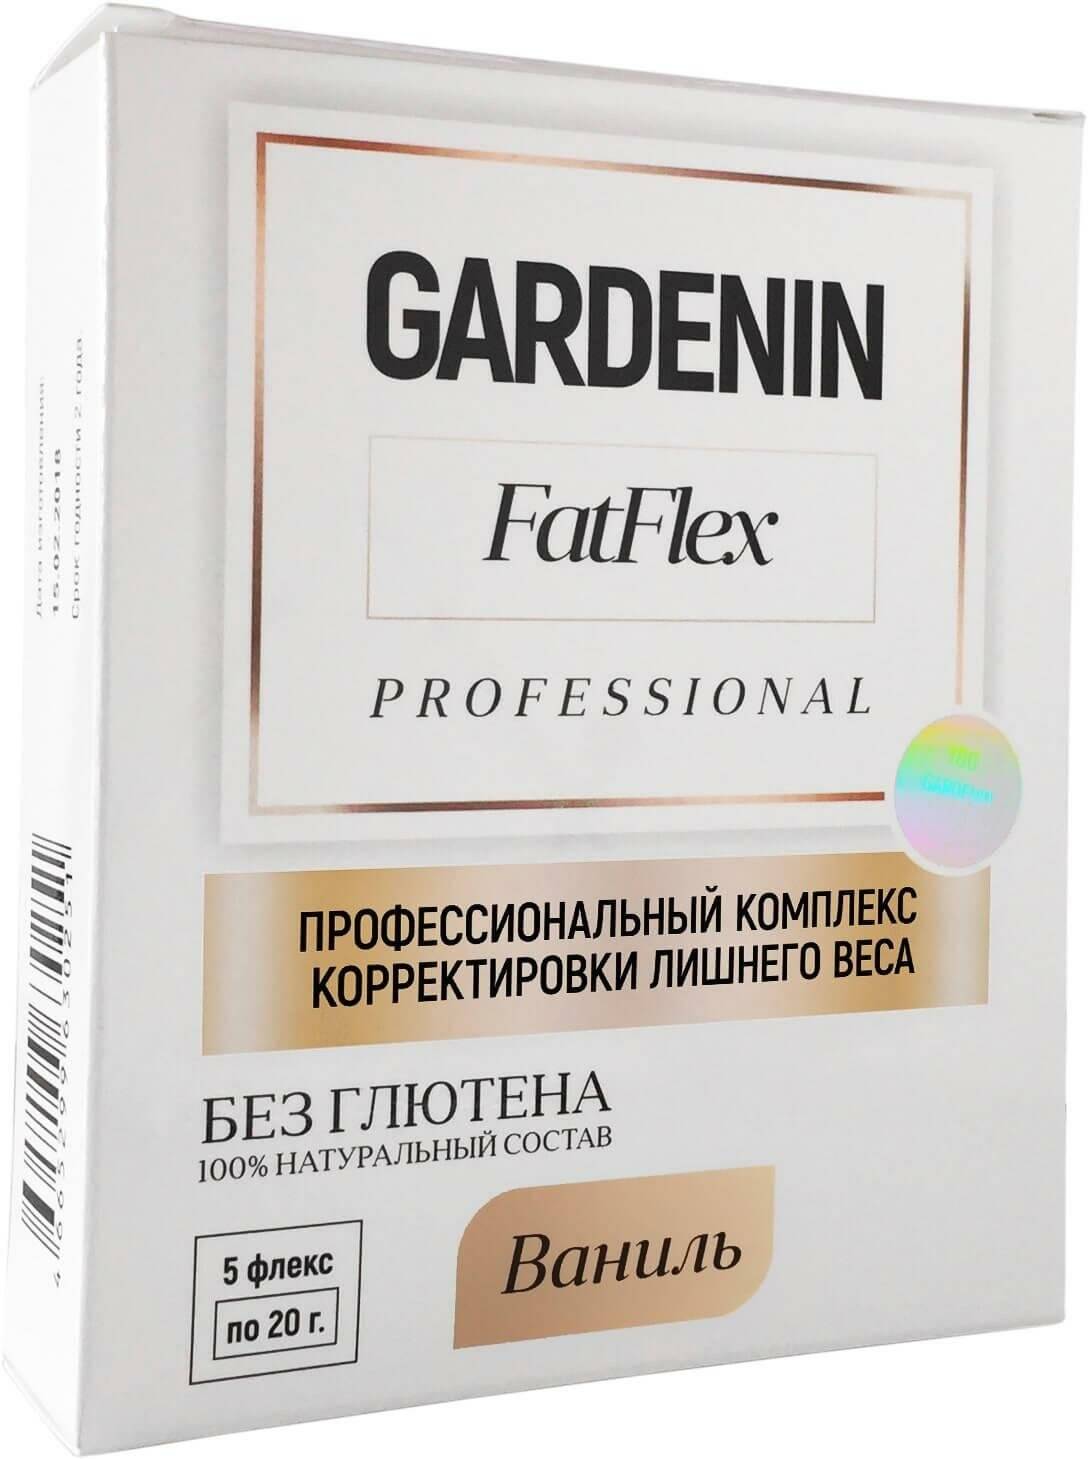 Gardenin fatflex – отзывы о препарате для быстрого похудения